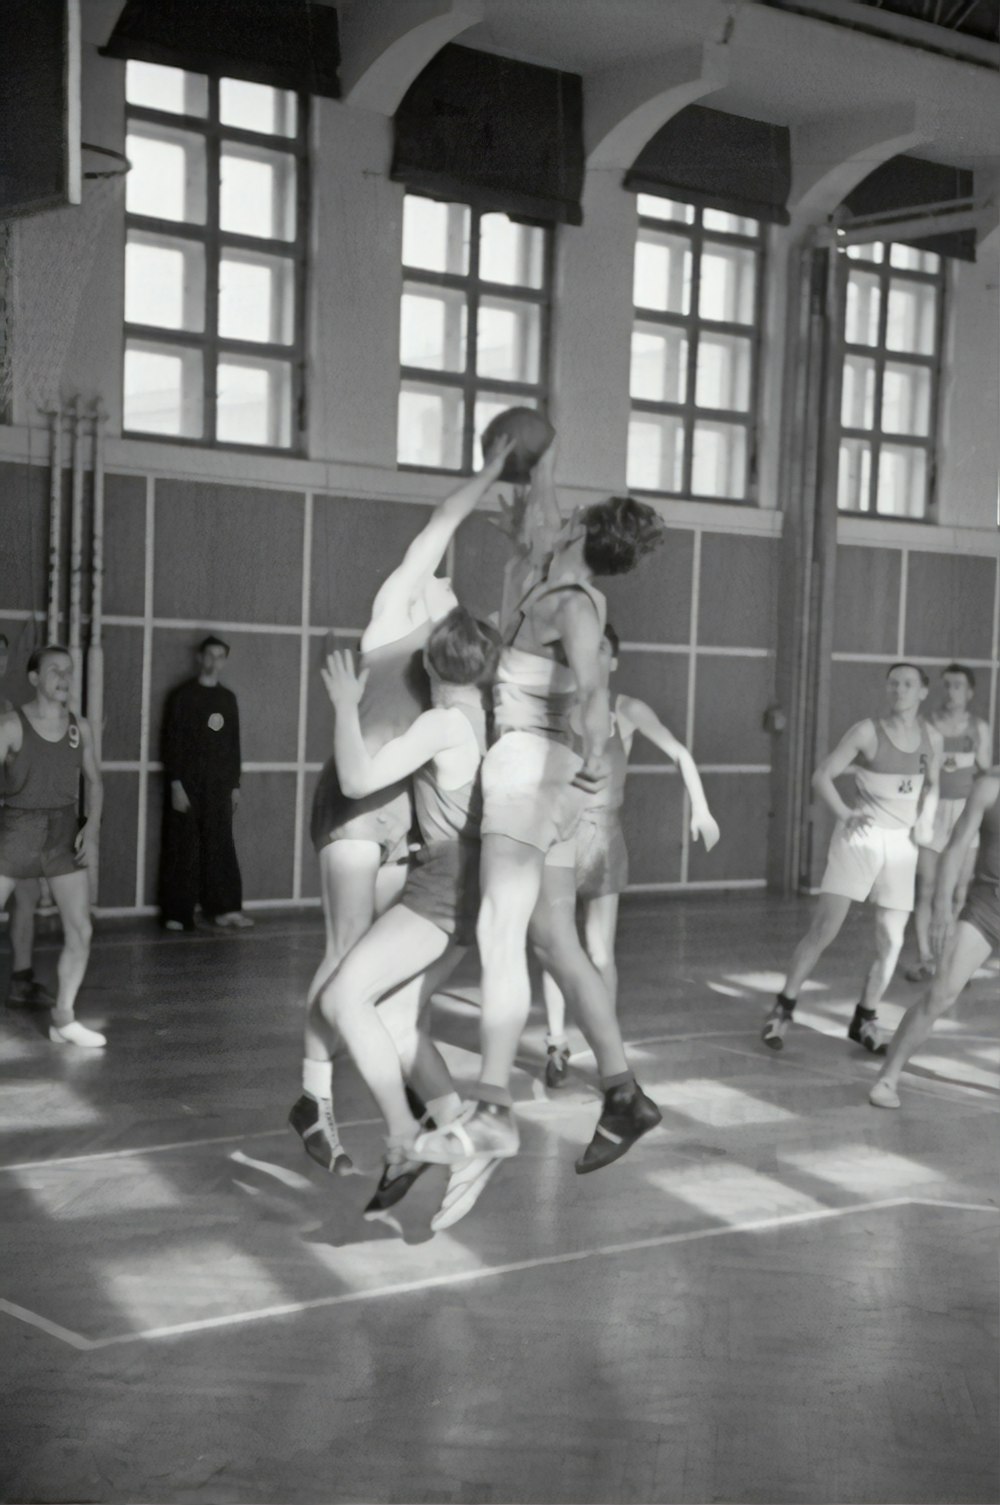 fotografia in scala di grigi di uomini che giocano a basket